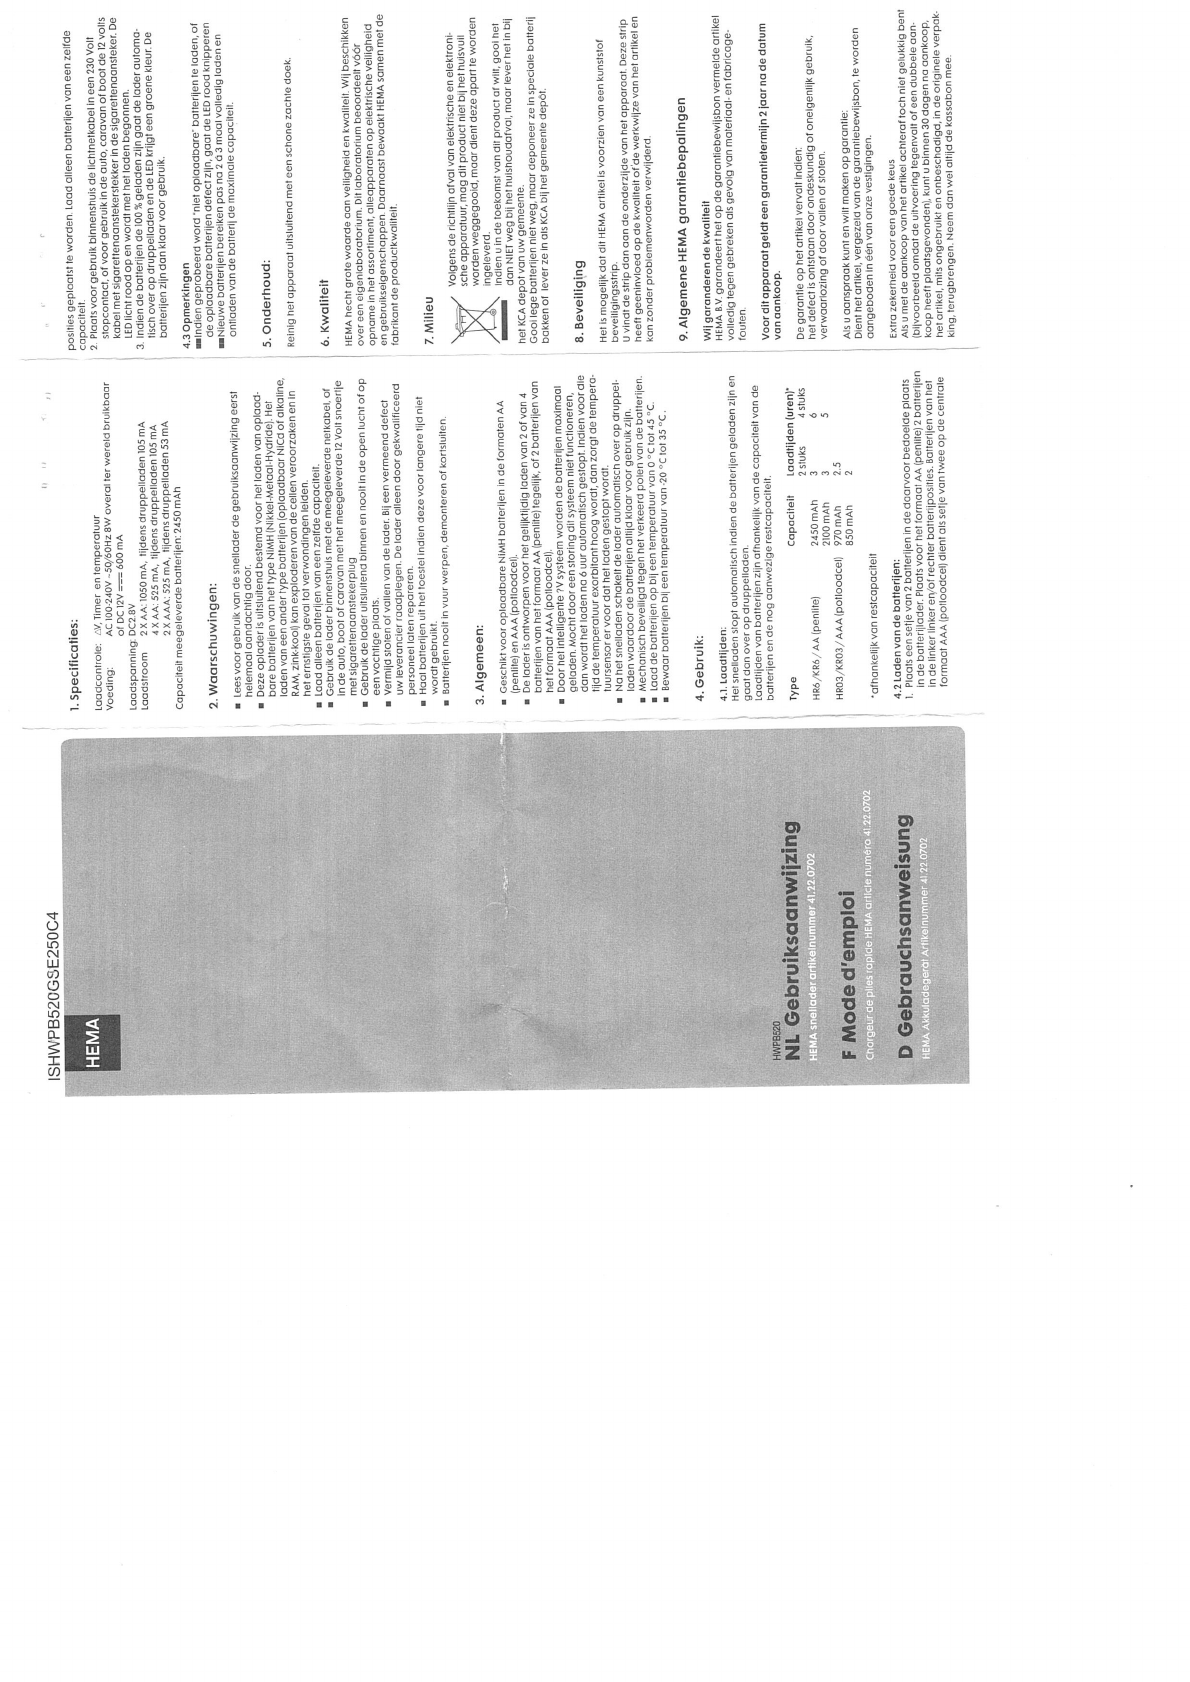 Supermarkt communicatie Pellen Handleiding Hema HWPB520GS (pagina 1 van 1) (Nederlands)